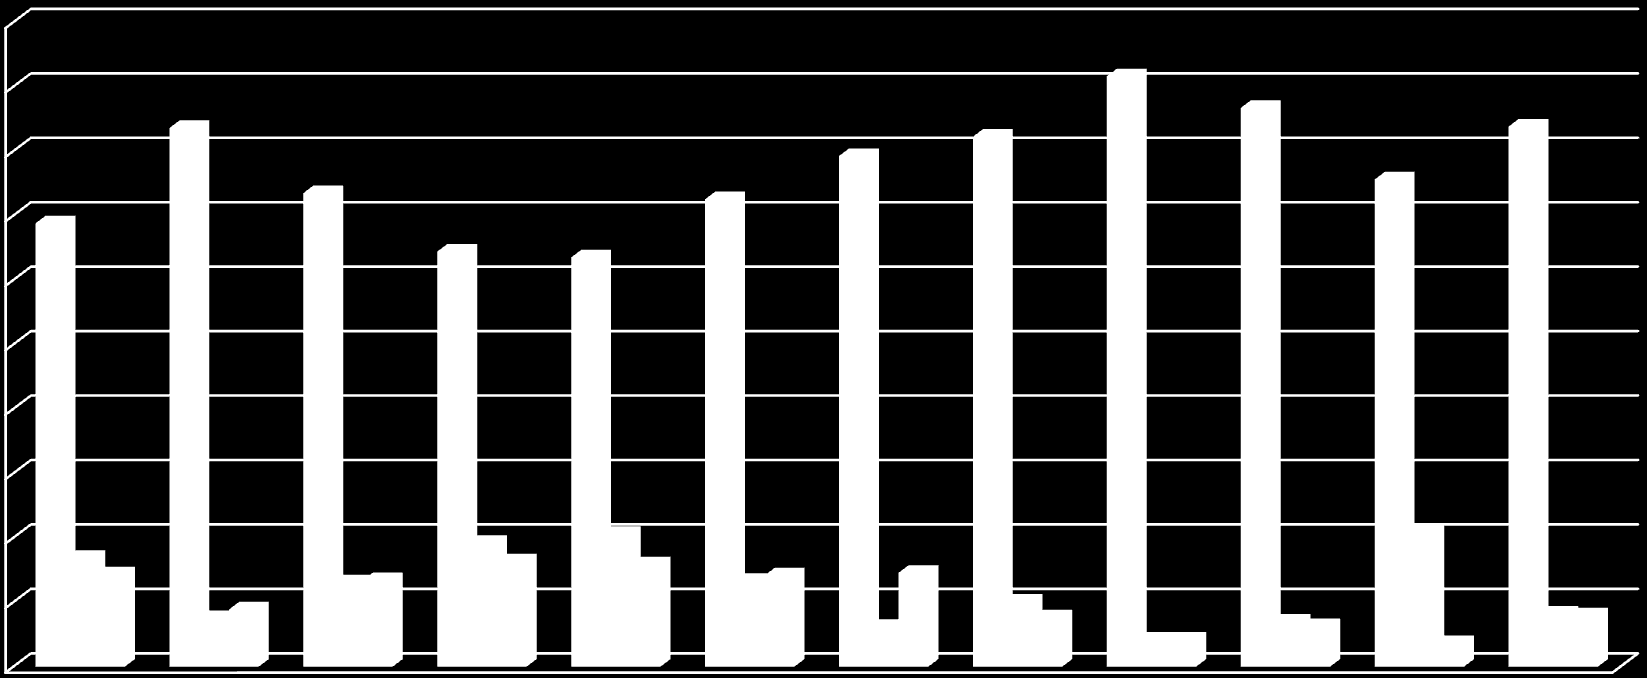 Trendy w rejestracji domen Rejestracje domen w 2007 roku w Active 24 100,0% 90,0% 80,0% 70,0% 60,0% 50,0% 40,0%.pl gtld.